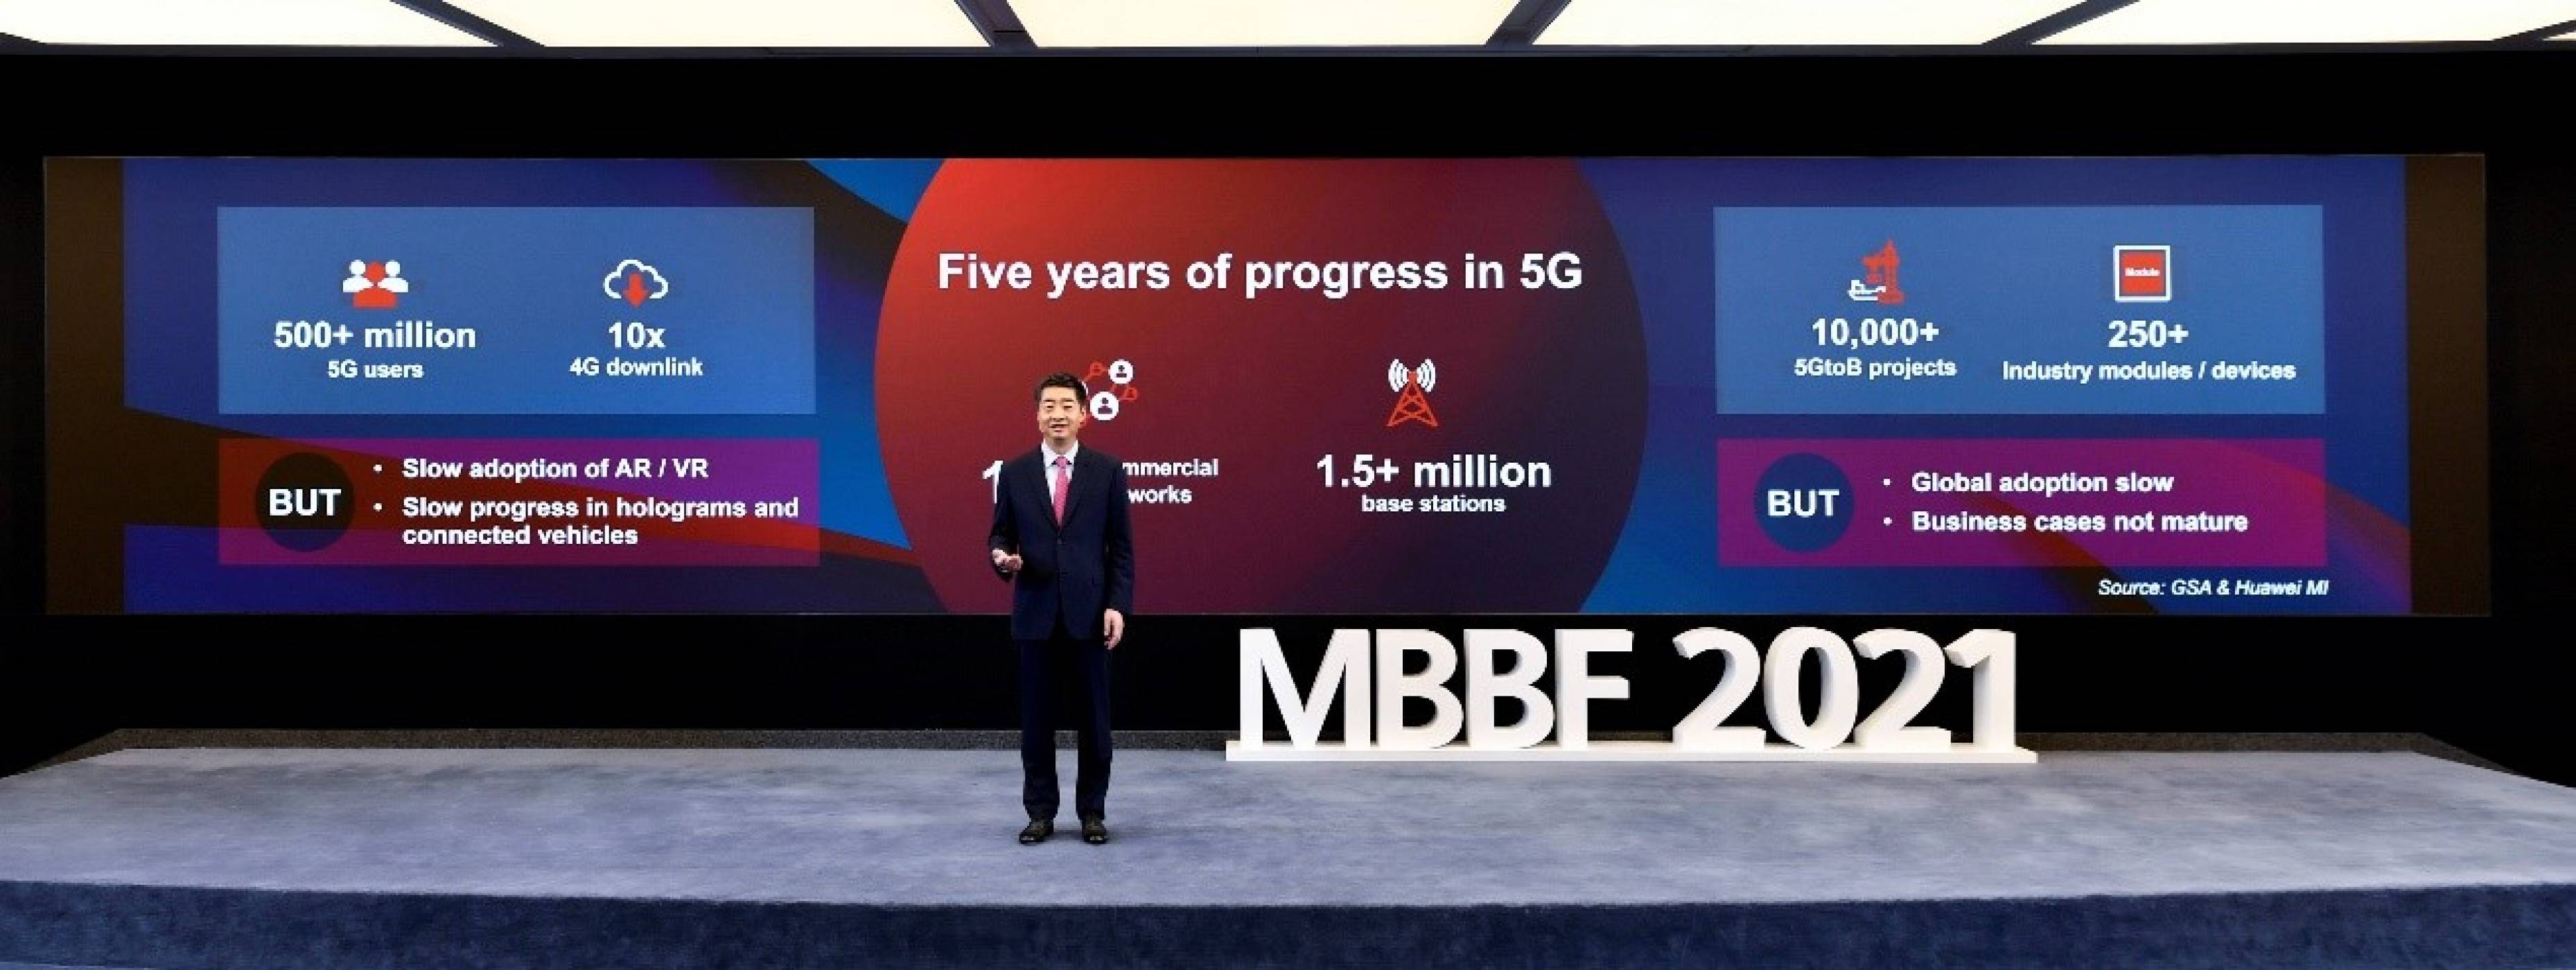 Кен Ху от Huawei призова ИКТ индустрията да обедини усилия за следващия етап от развитието на 5G